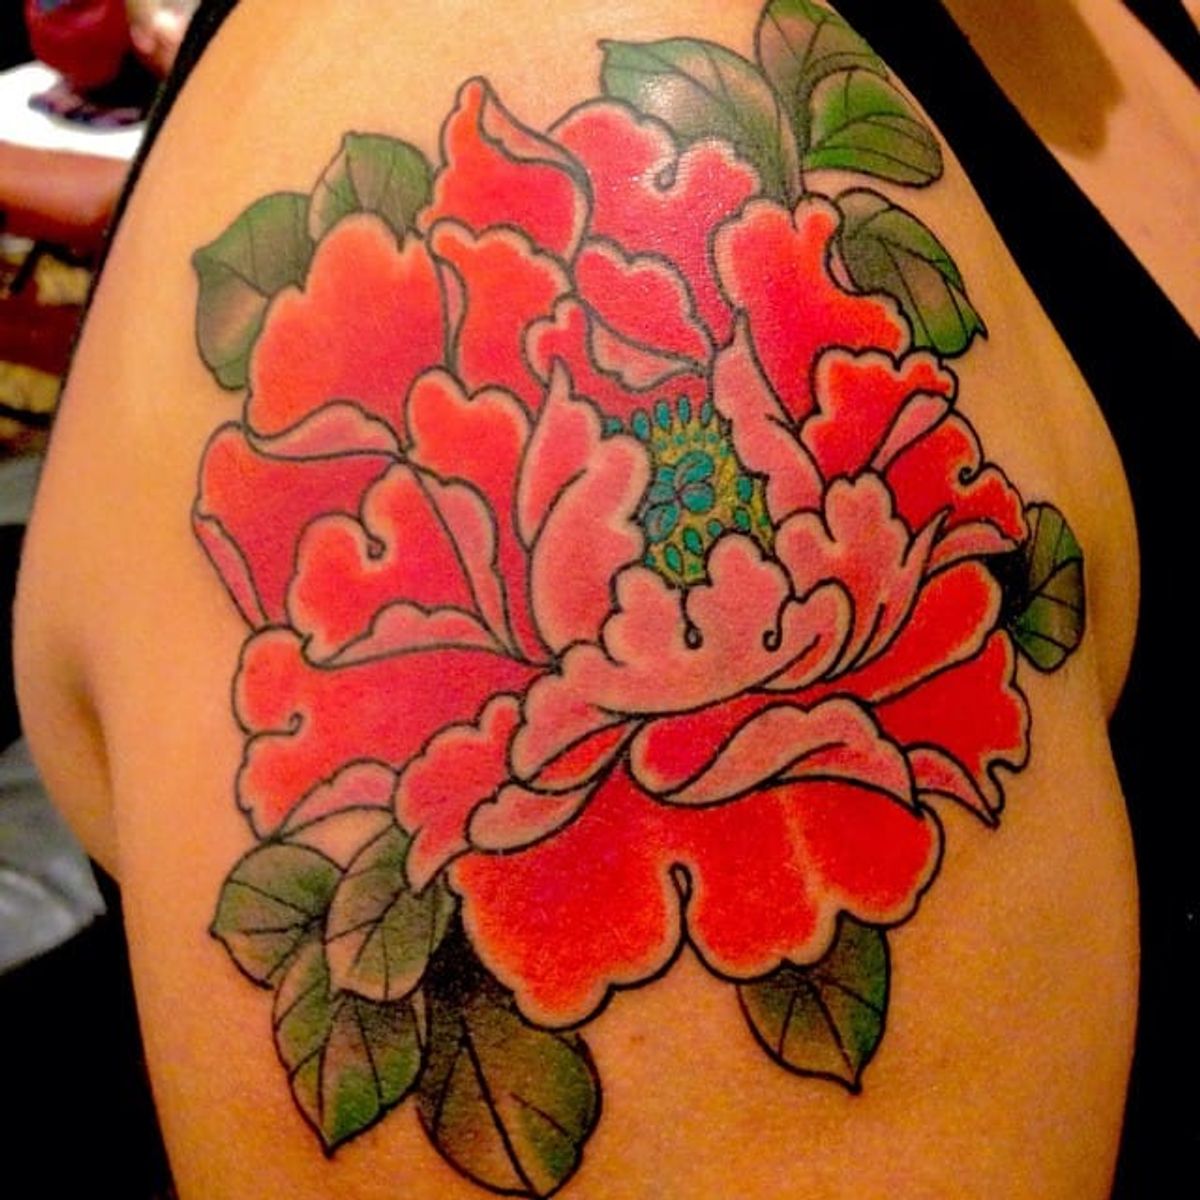 Tattoo uploaded by Tattoodo • Peony flower tattoo by Chris Nunez # ...